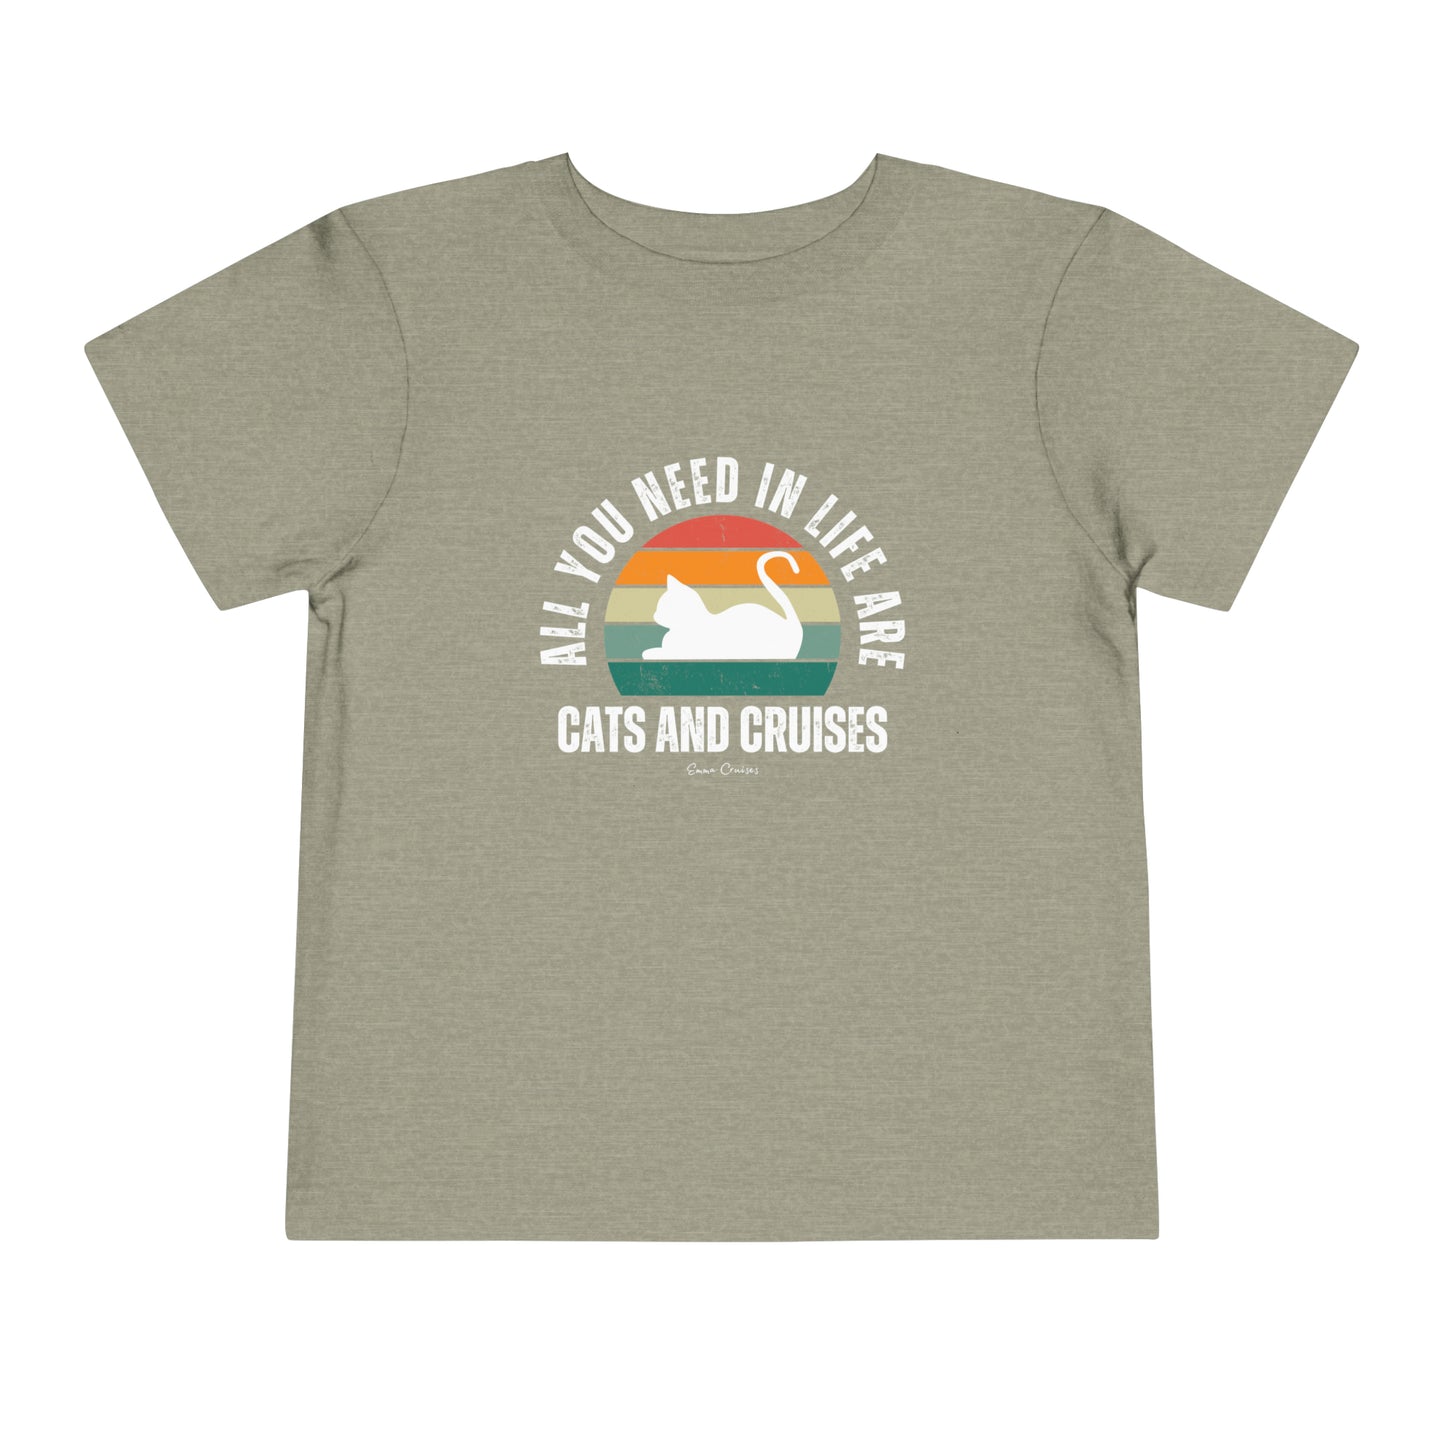 Katzen und Kreuzfahrten - Kleinkind UNISEX T-Shirt 